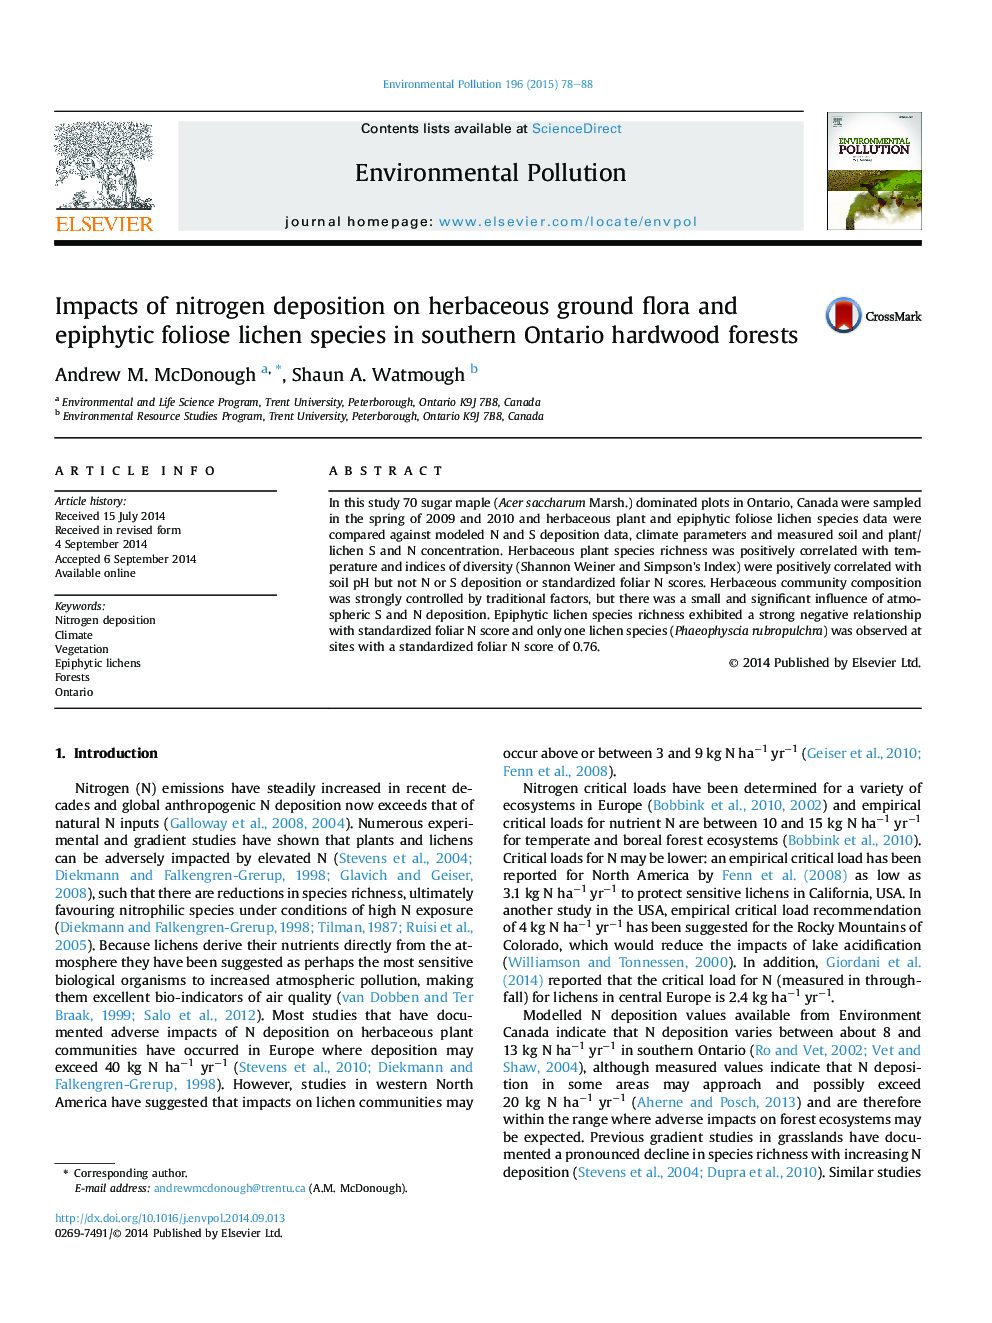 اثرات رسوبدهی نیتروژن بر روی گیاهان علفی و گونه های لیگن فلیوس اپی فیتی در جنگل های جنگل جنوبی جنوب شرقی انتاریو 